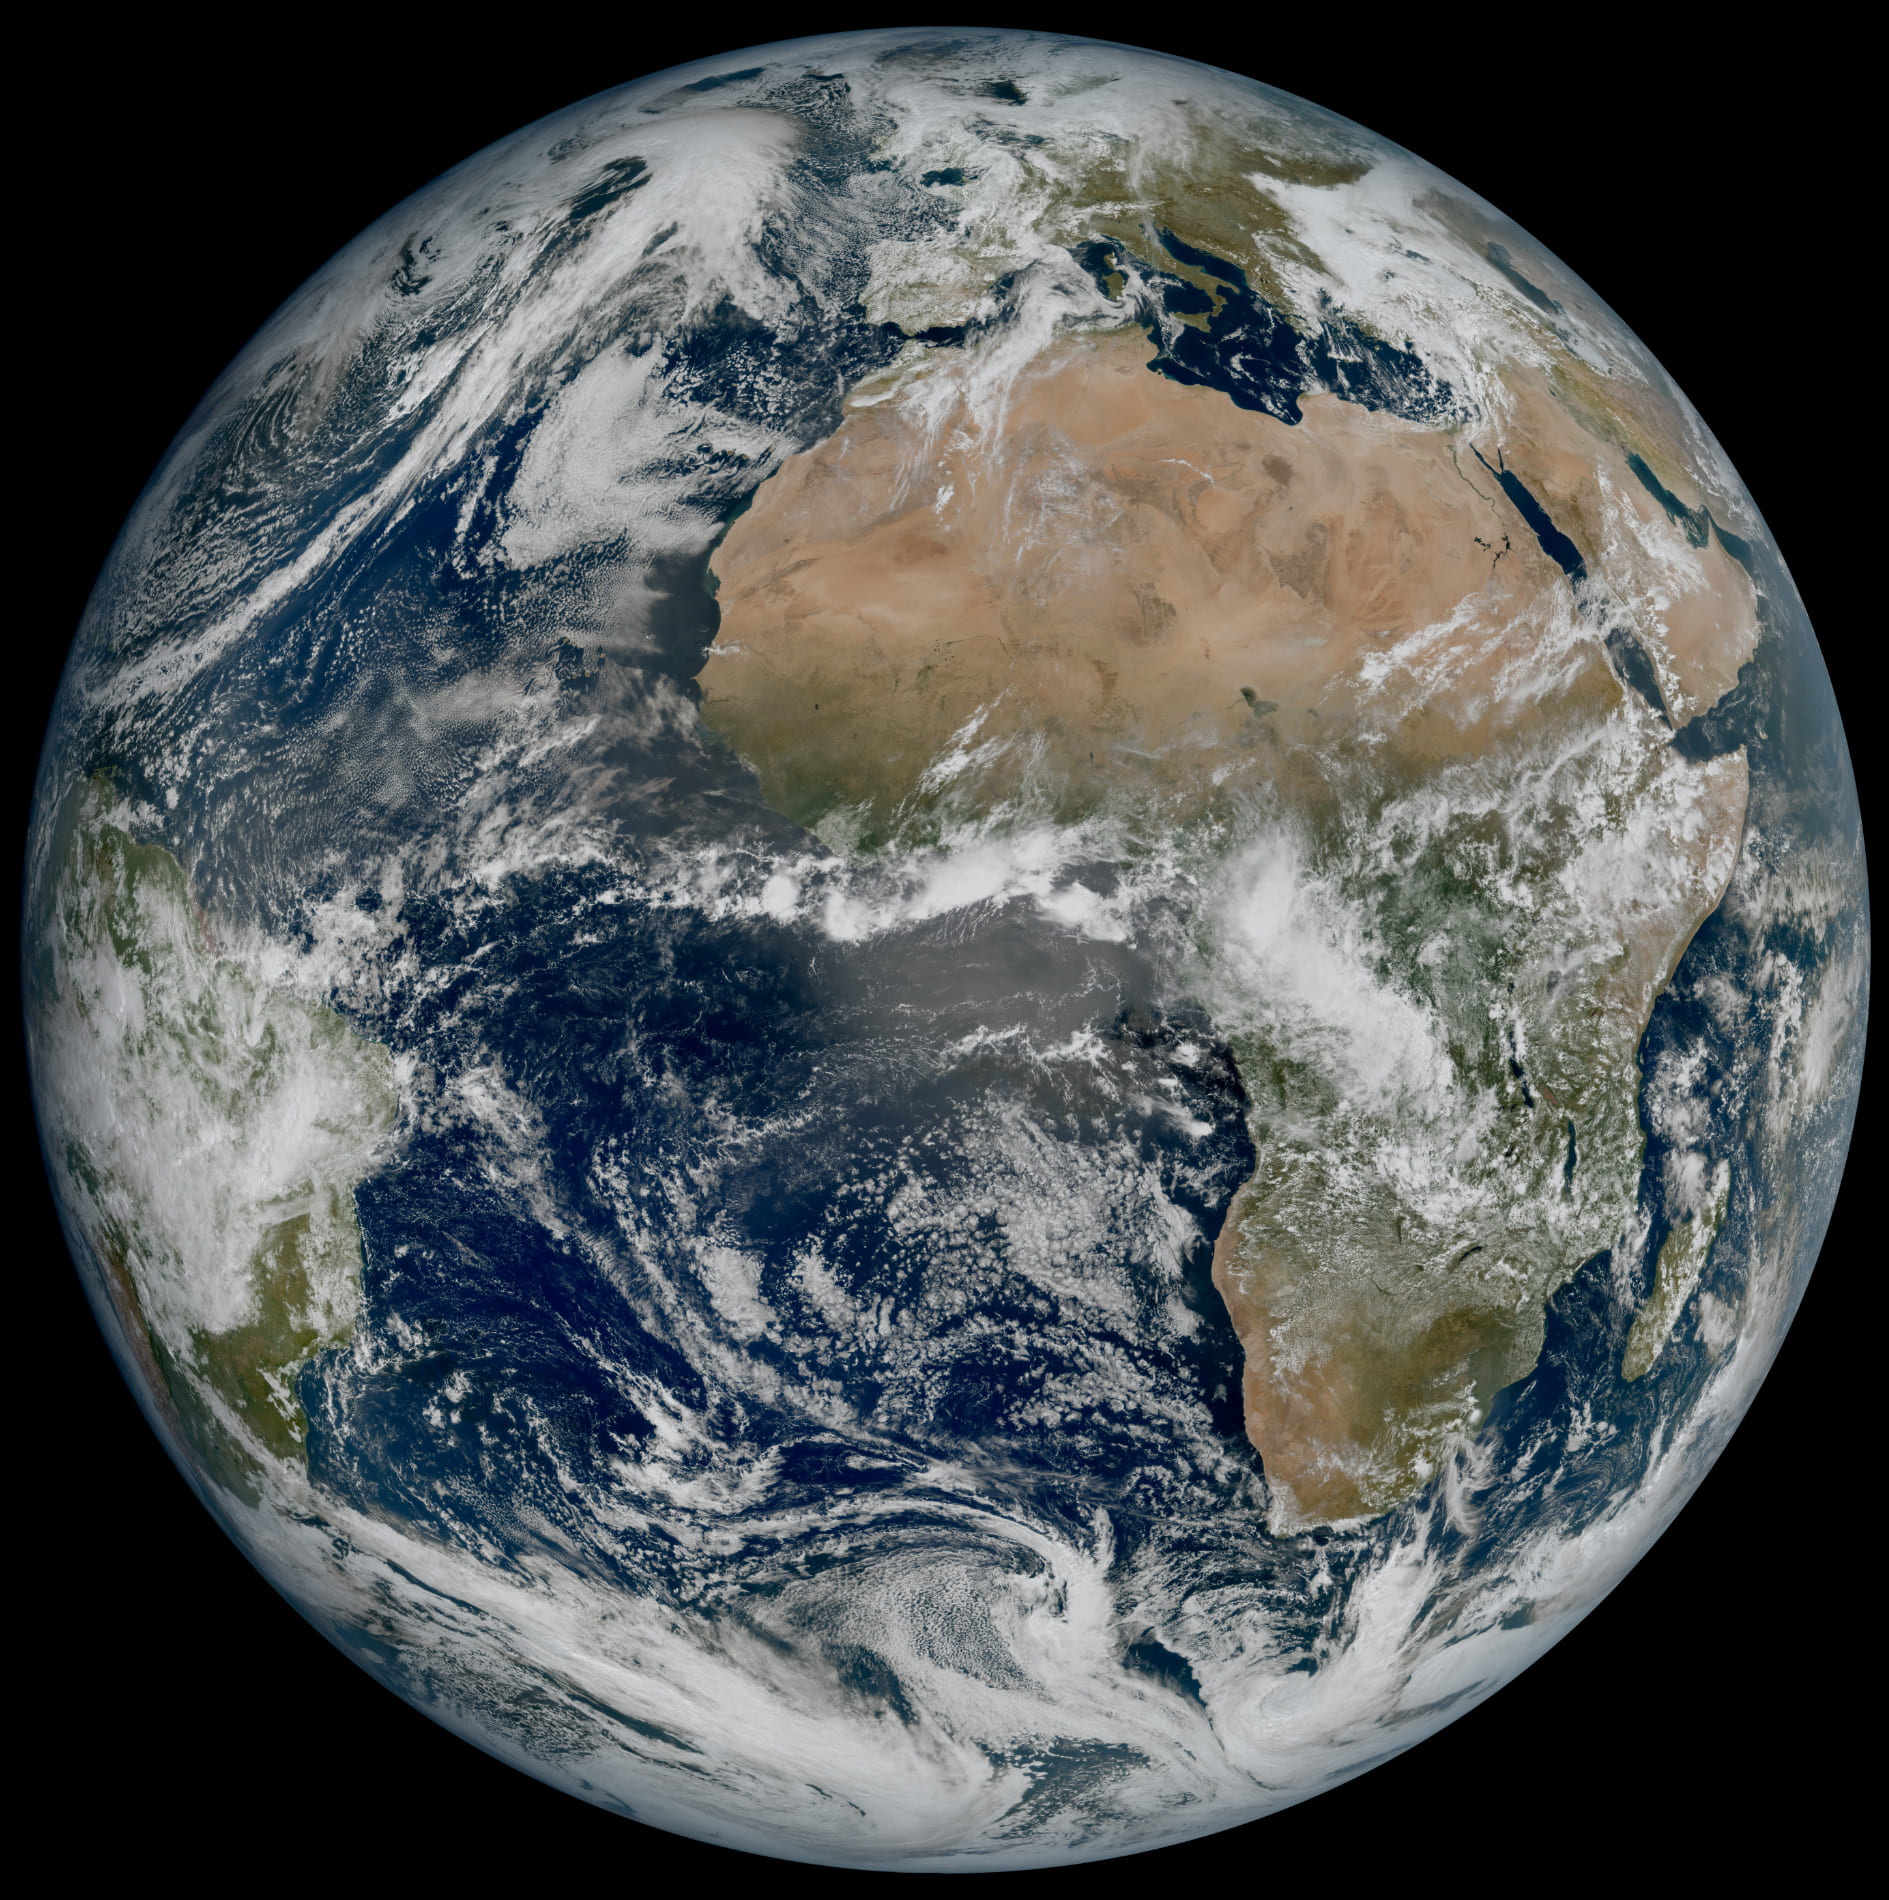 Метеорологический спутник European Meteosat Third Generation Imager-1 сделал  невероятно четкий снимок Земли из космоса